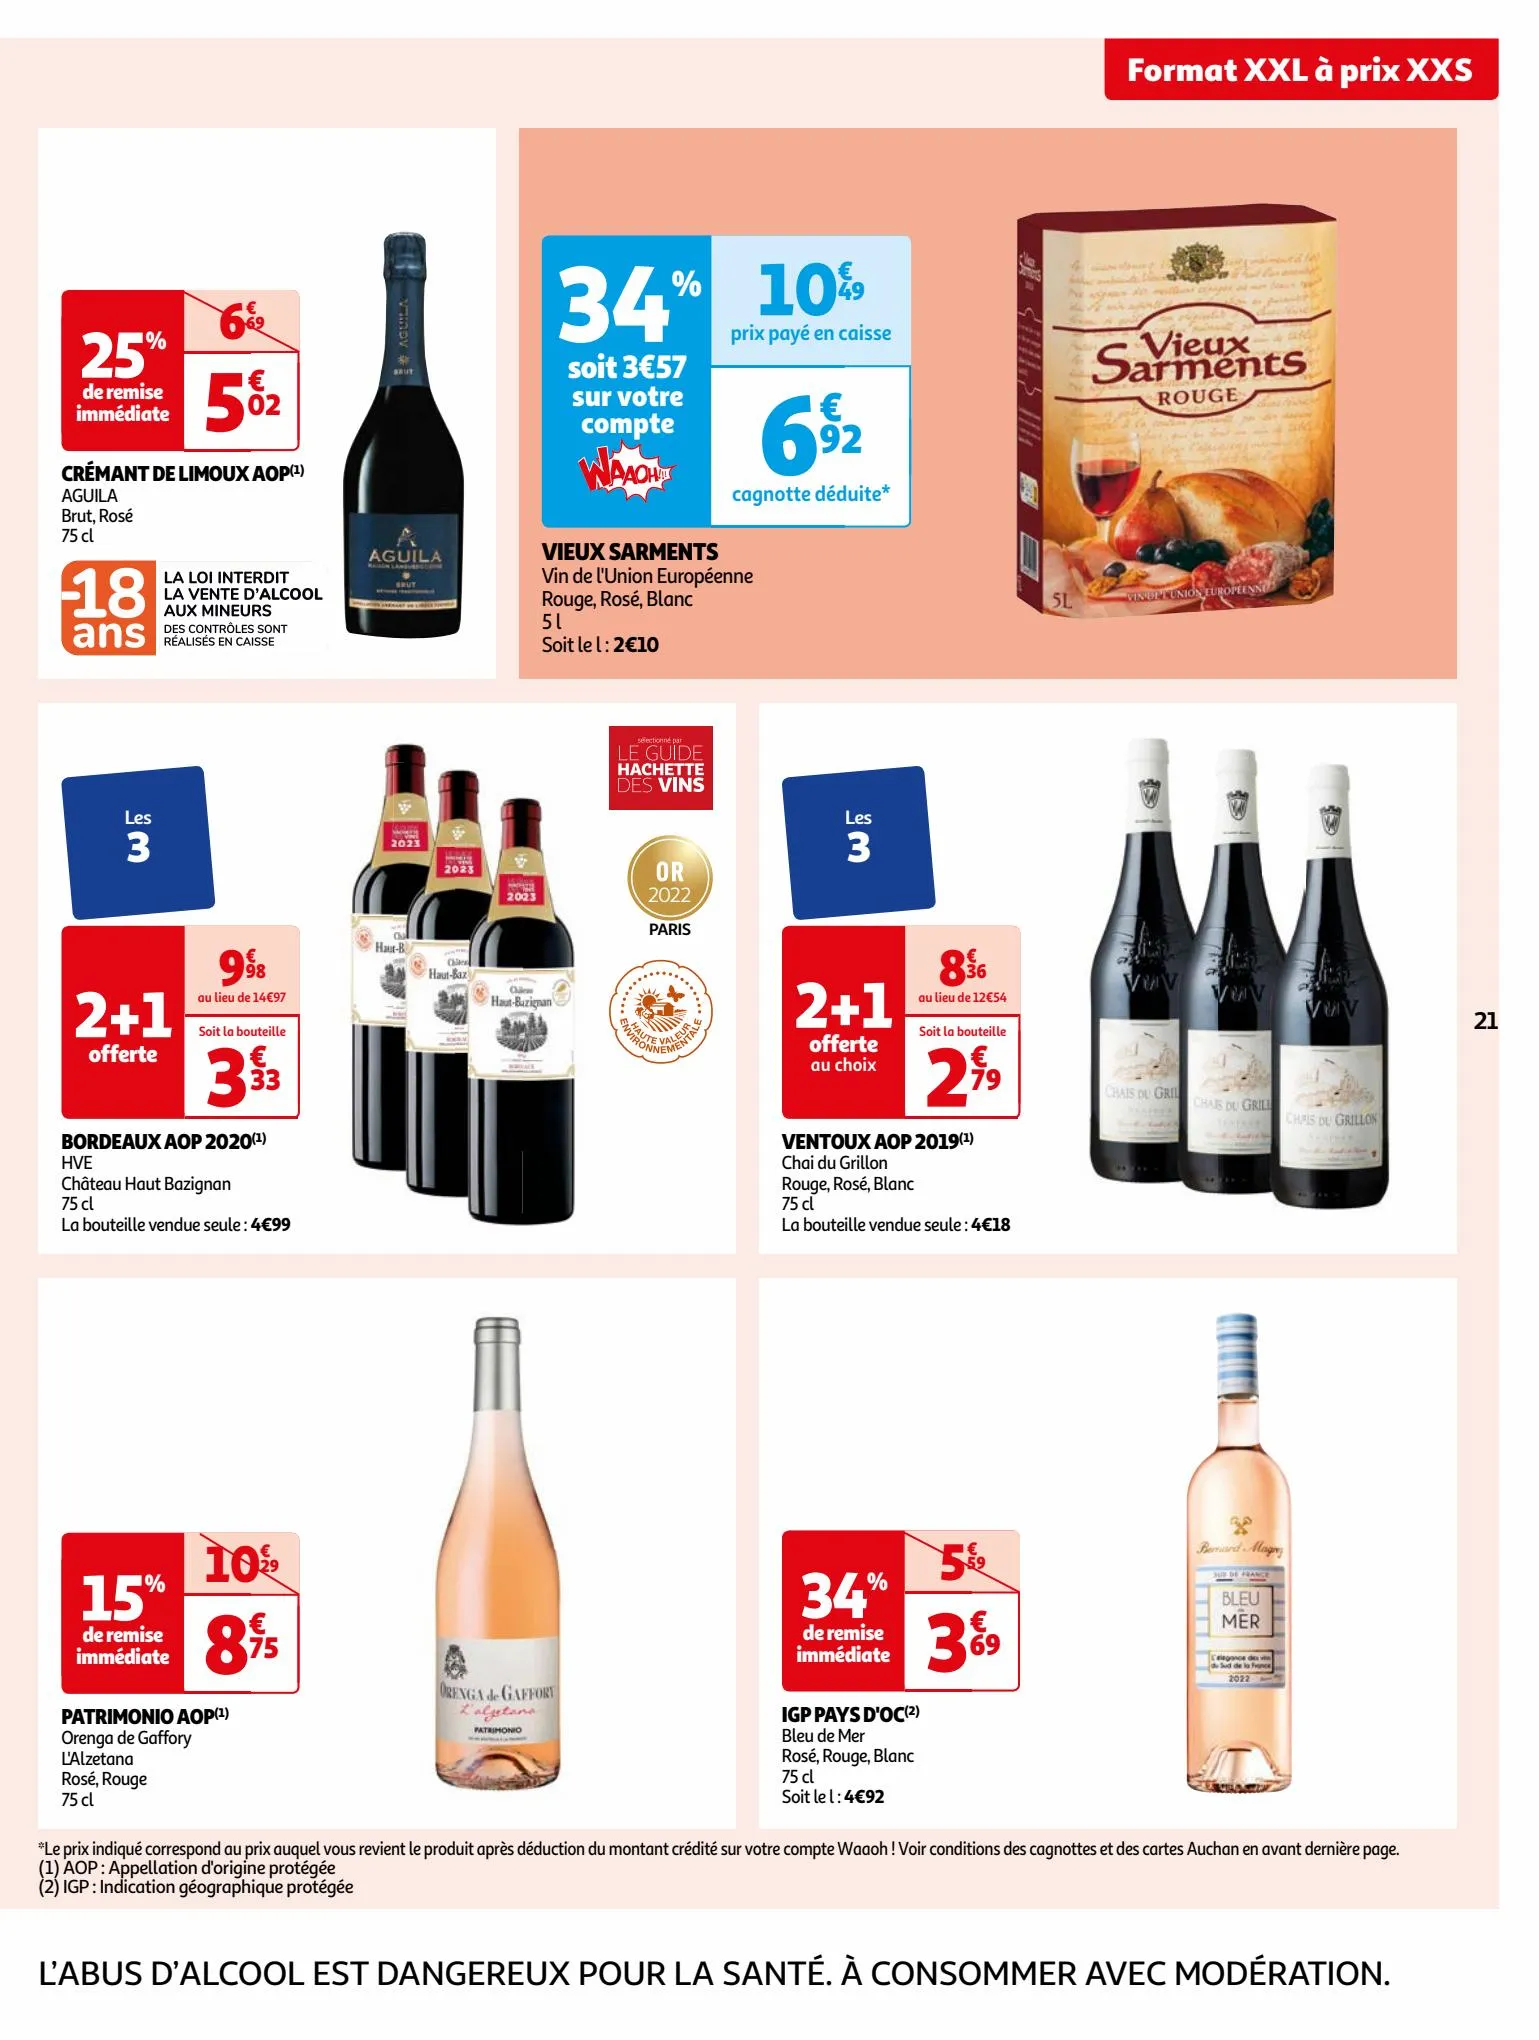 Catalogue Format XXL à prix XXS dans votre supermarché, page 00021